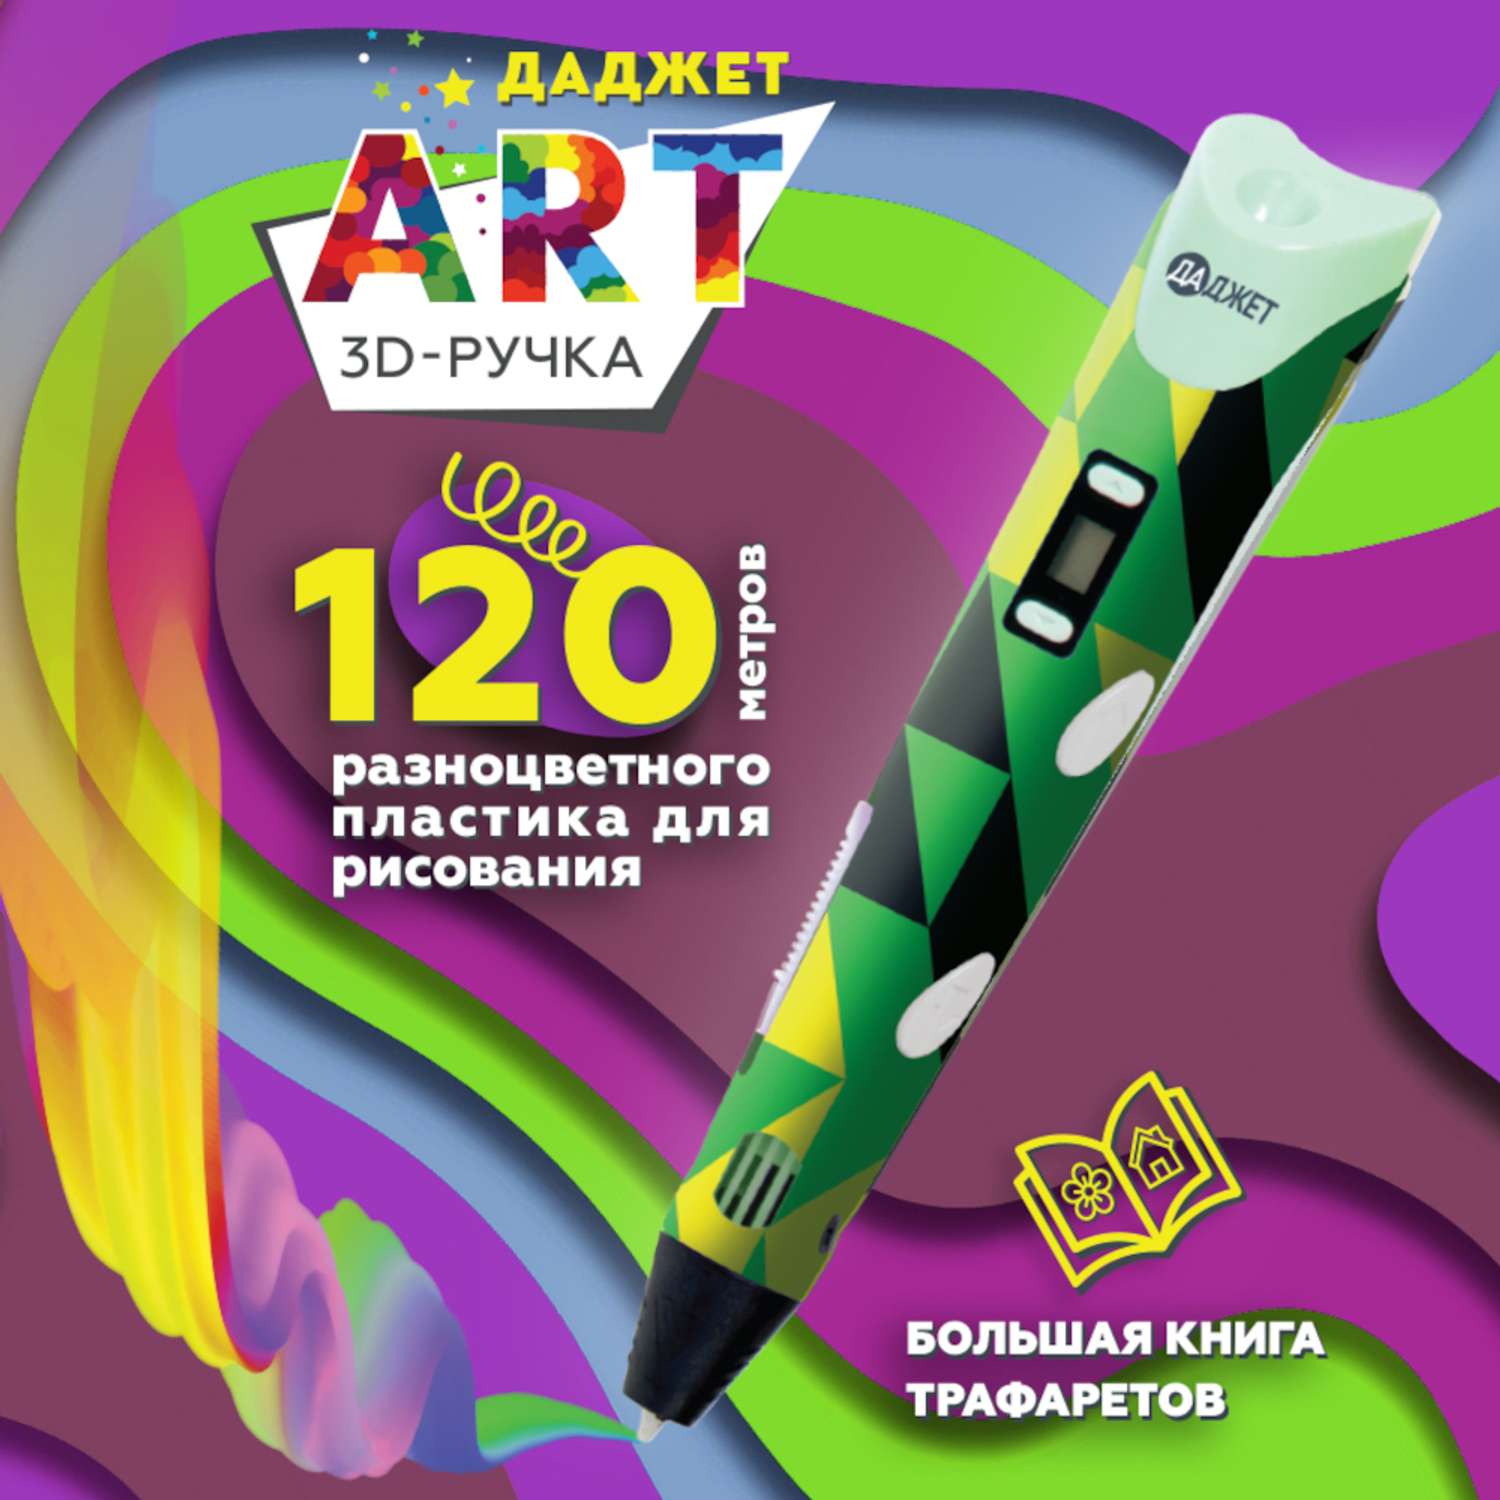 3d ручка art Даджет с набором пластика 120 м зеленая - фото 1